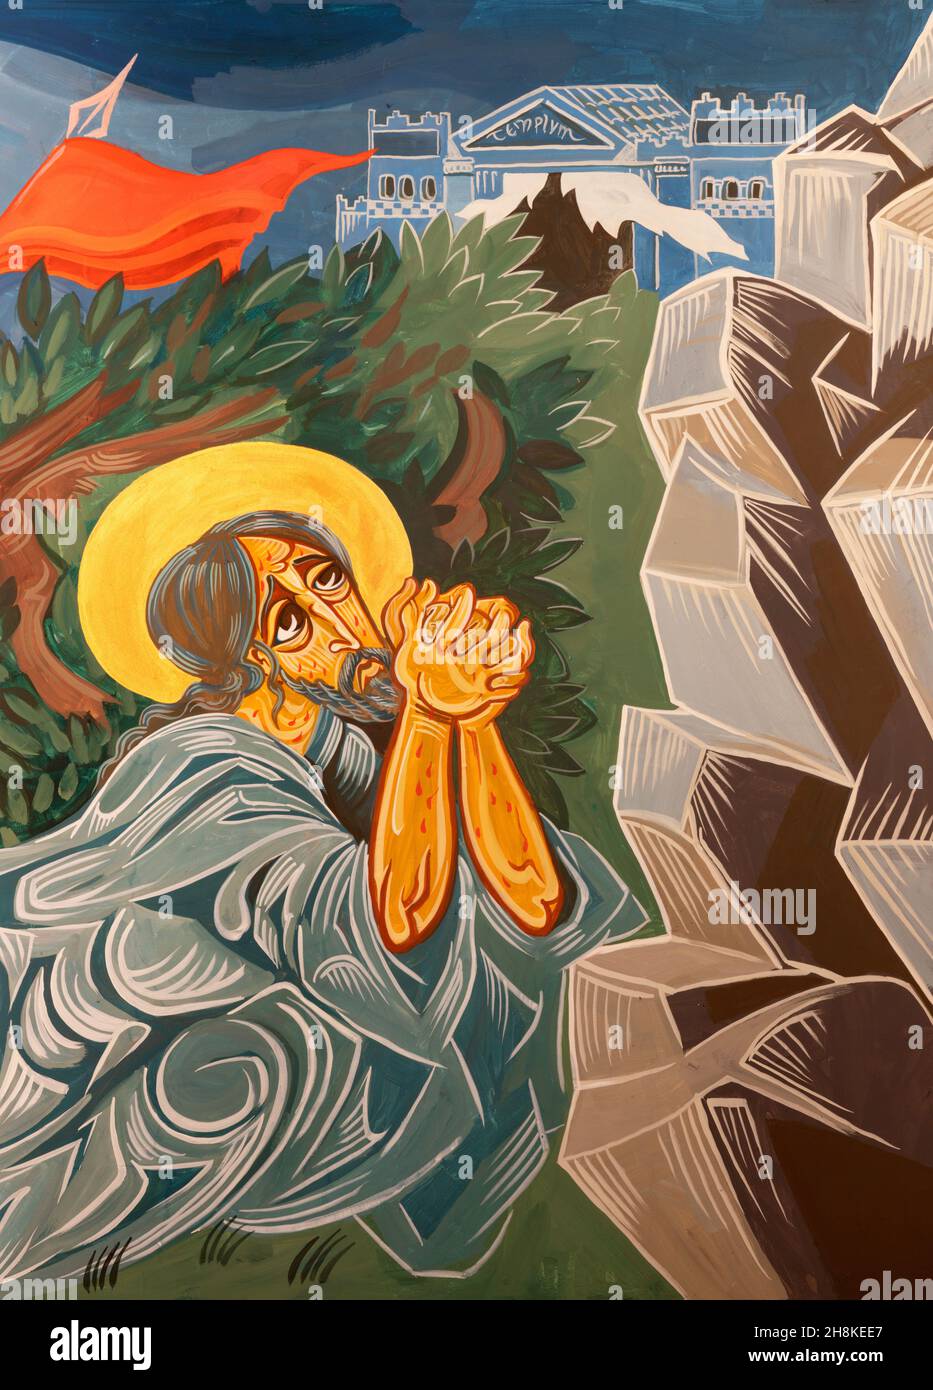 Forlí - il dettaglio dell'affresco moderno della preghiera di Gesù nel giardino del Getsemani nella chiesa Chiesa di San Giovanni Battista di Coriano. Foto Stock